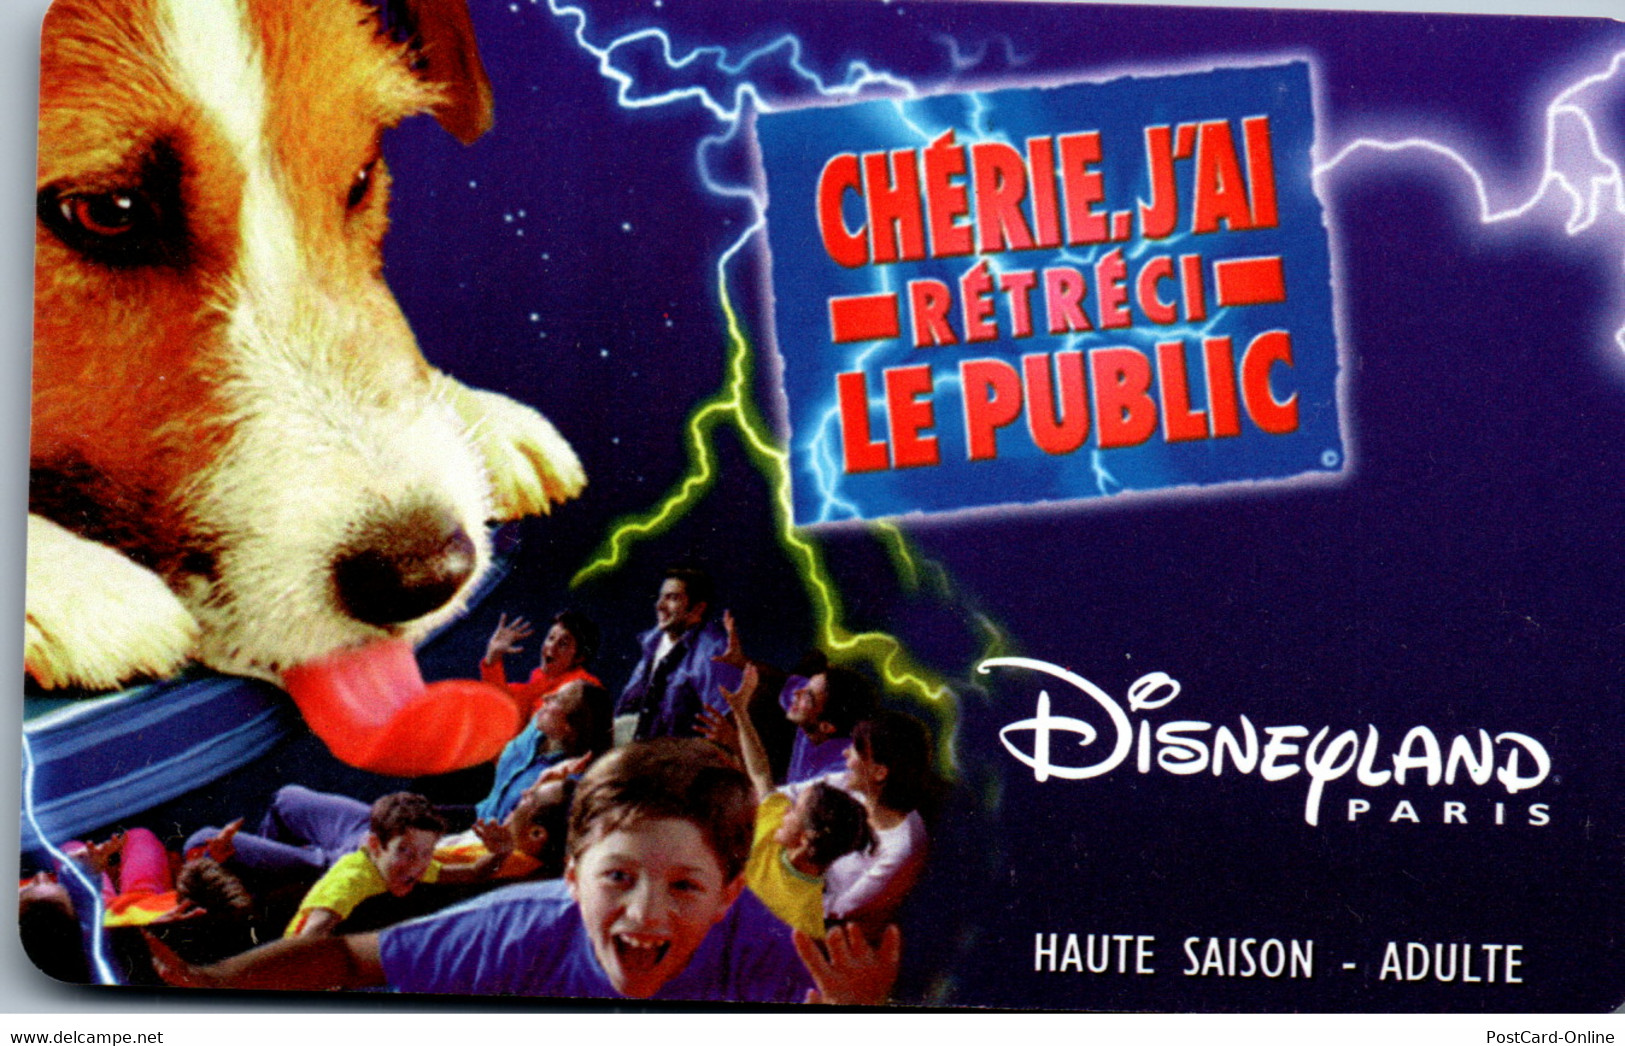 19494 - Frankreich - Disneyland Paris , Eintrittskarte , Adult , Haute Saison - Toegangsticket Disney